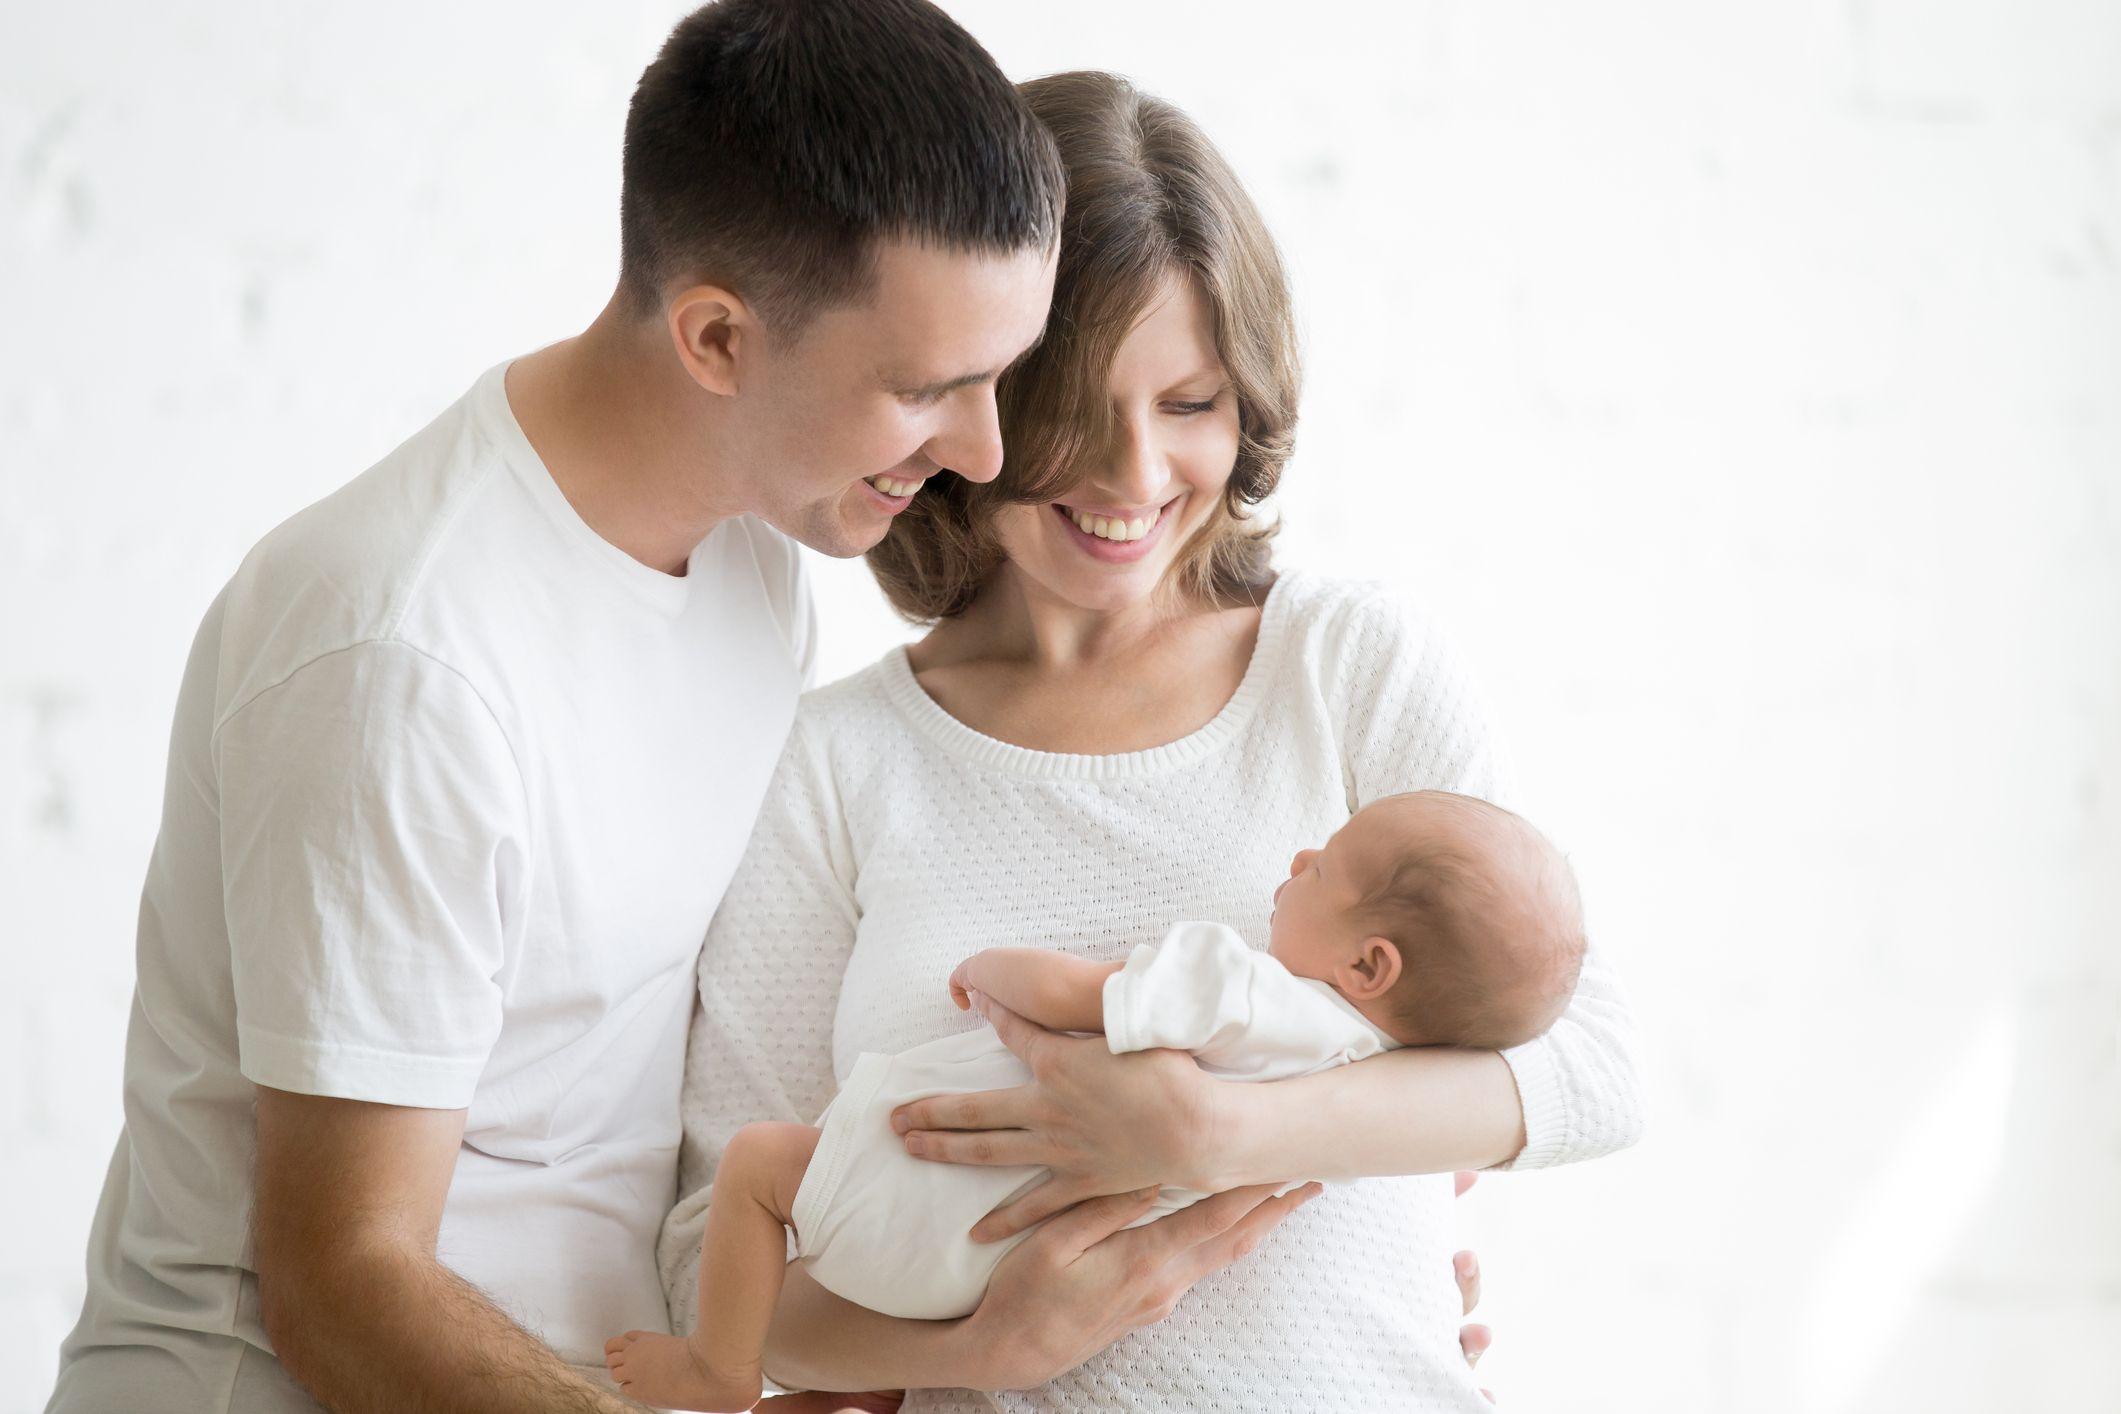 Pet savjeta za novopečene roditelje